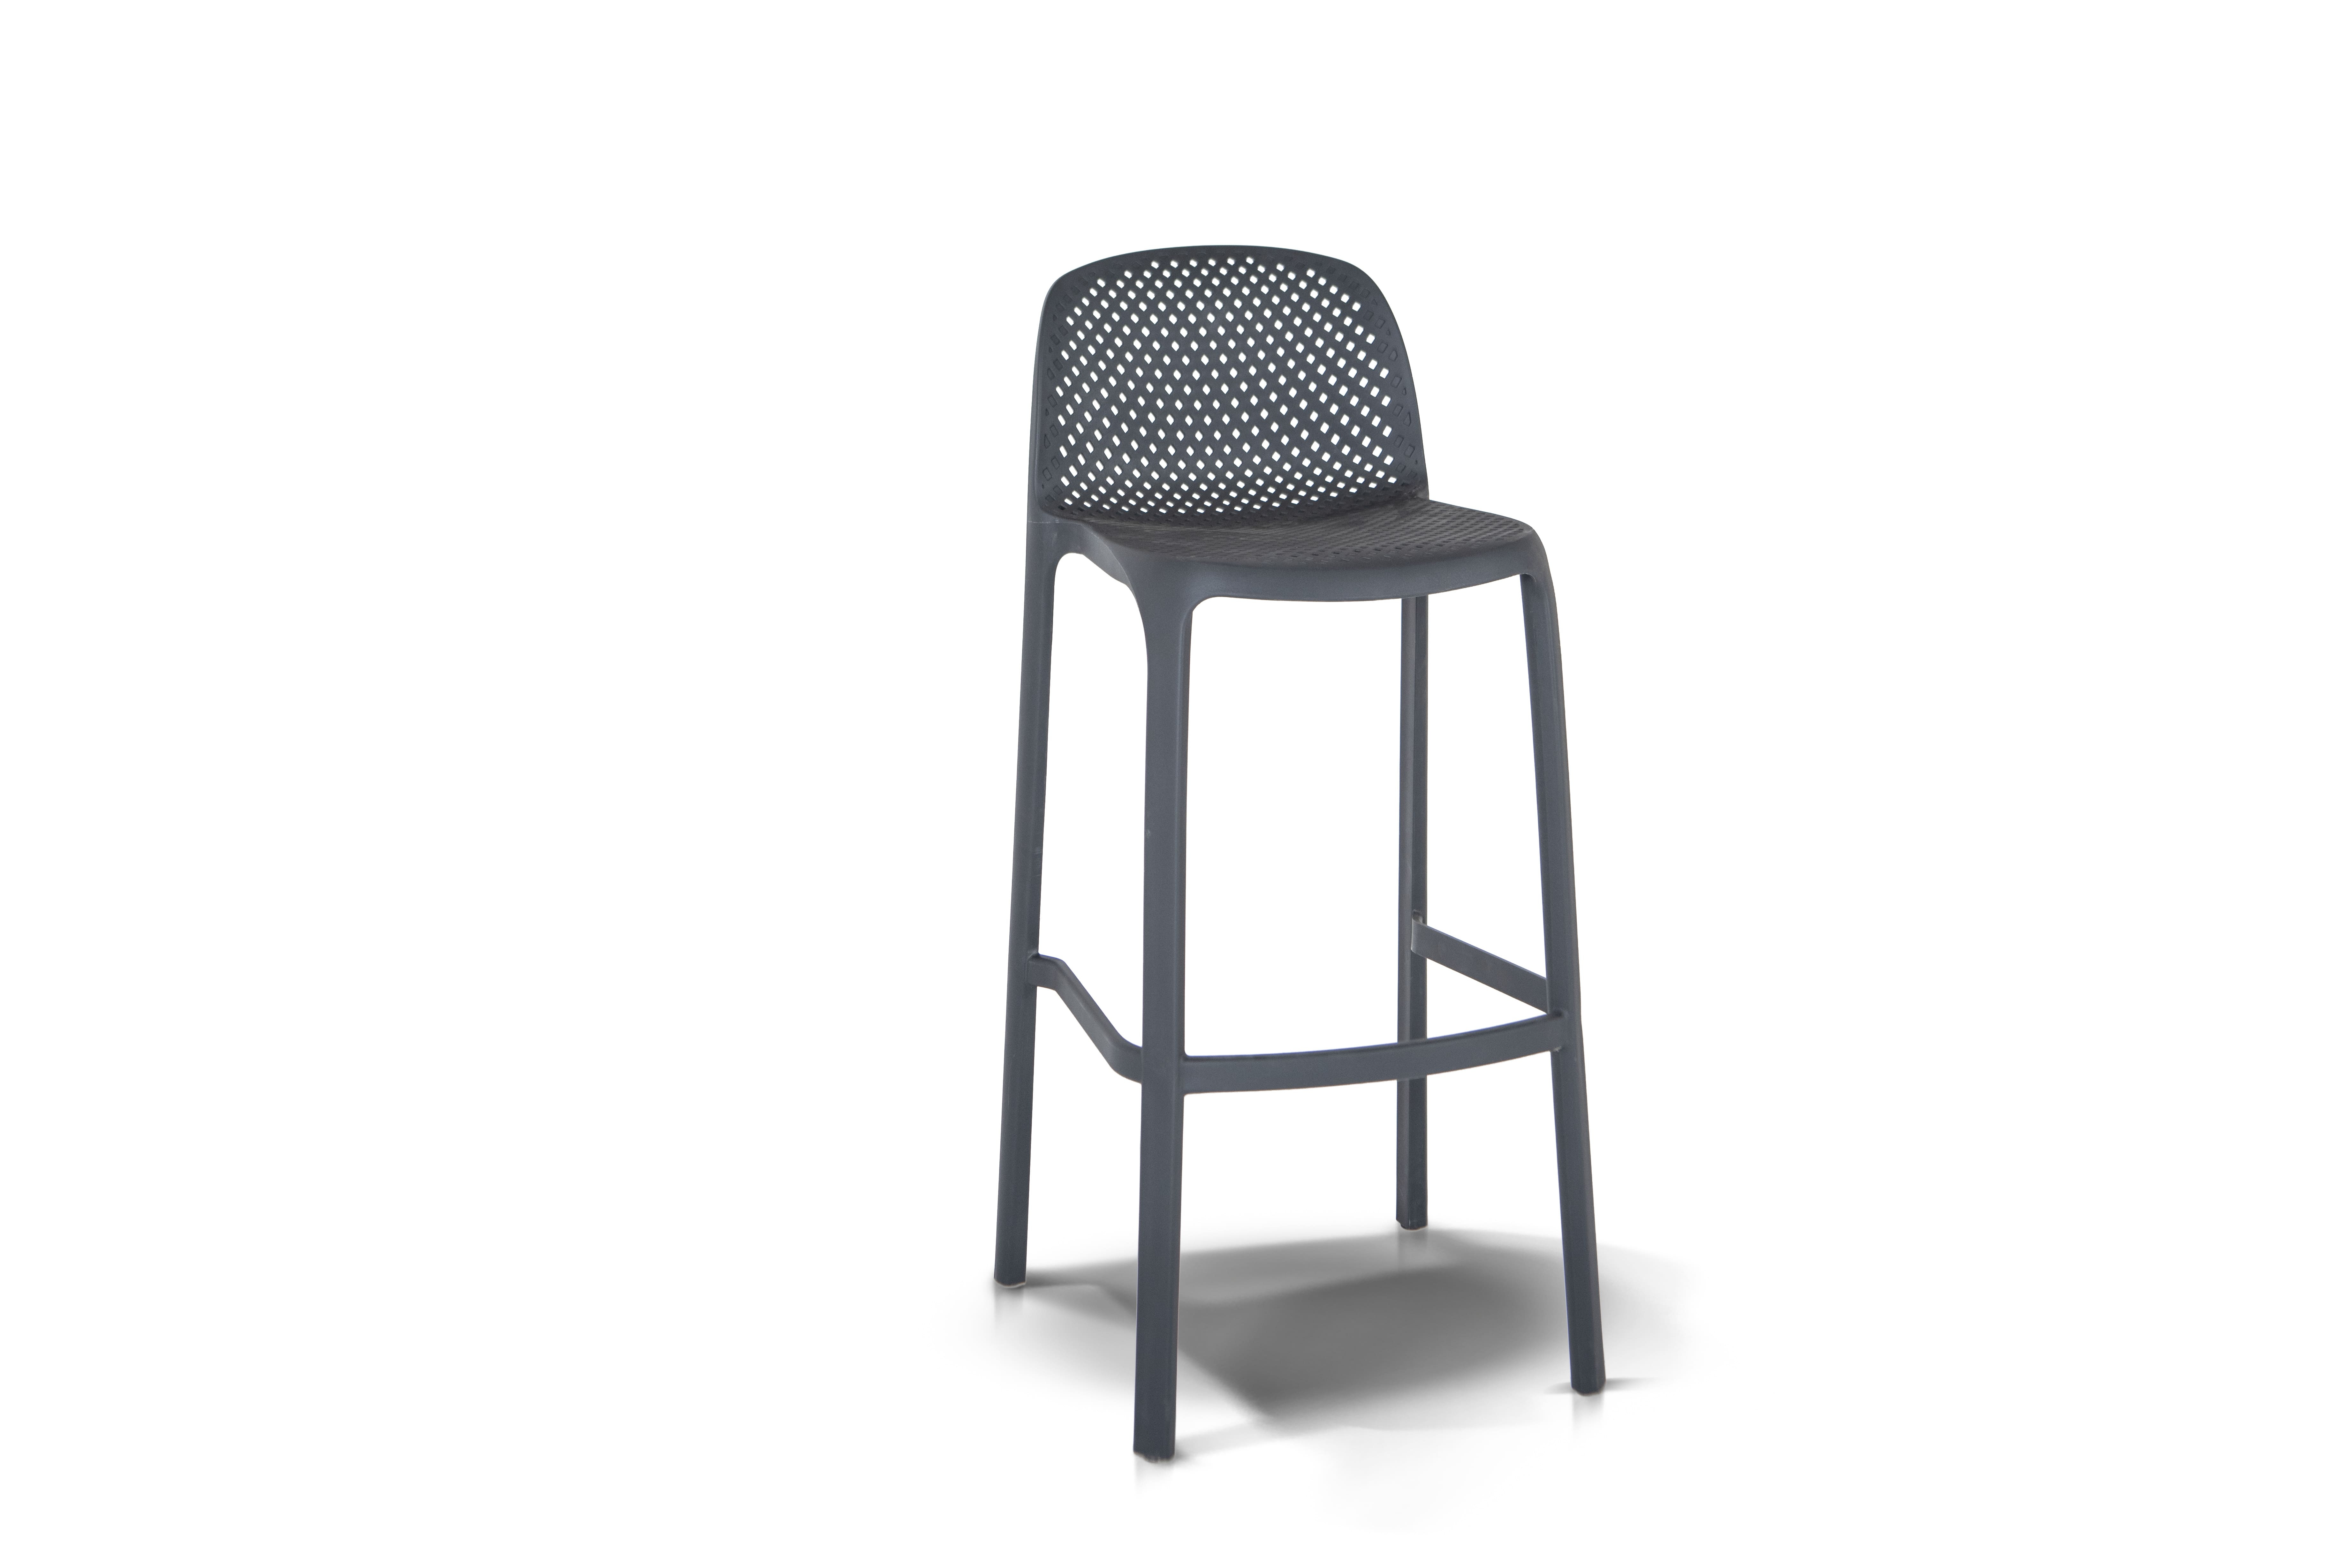 Барный стул севилья барный стул из пластика, цвет темно-серый outdoor серый 43x96x51 см. preview 1